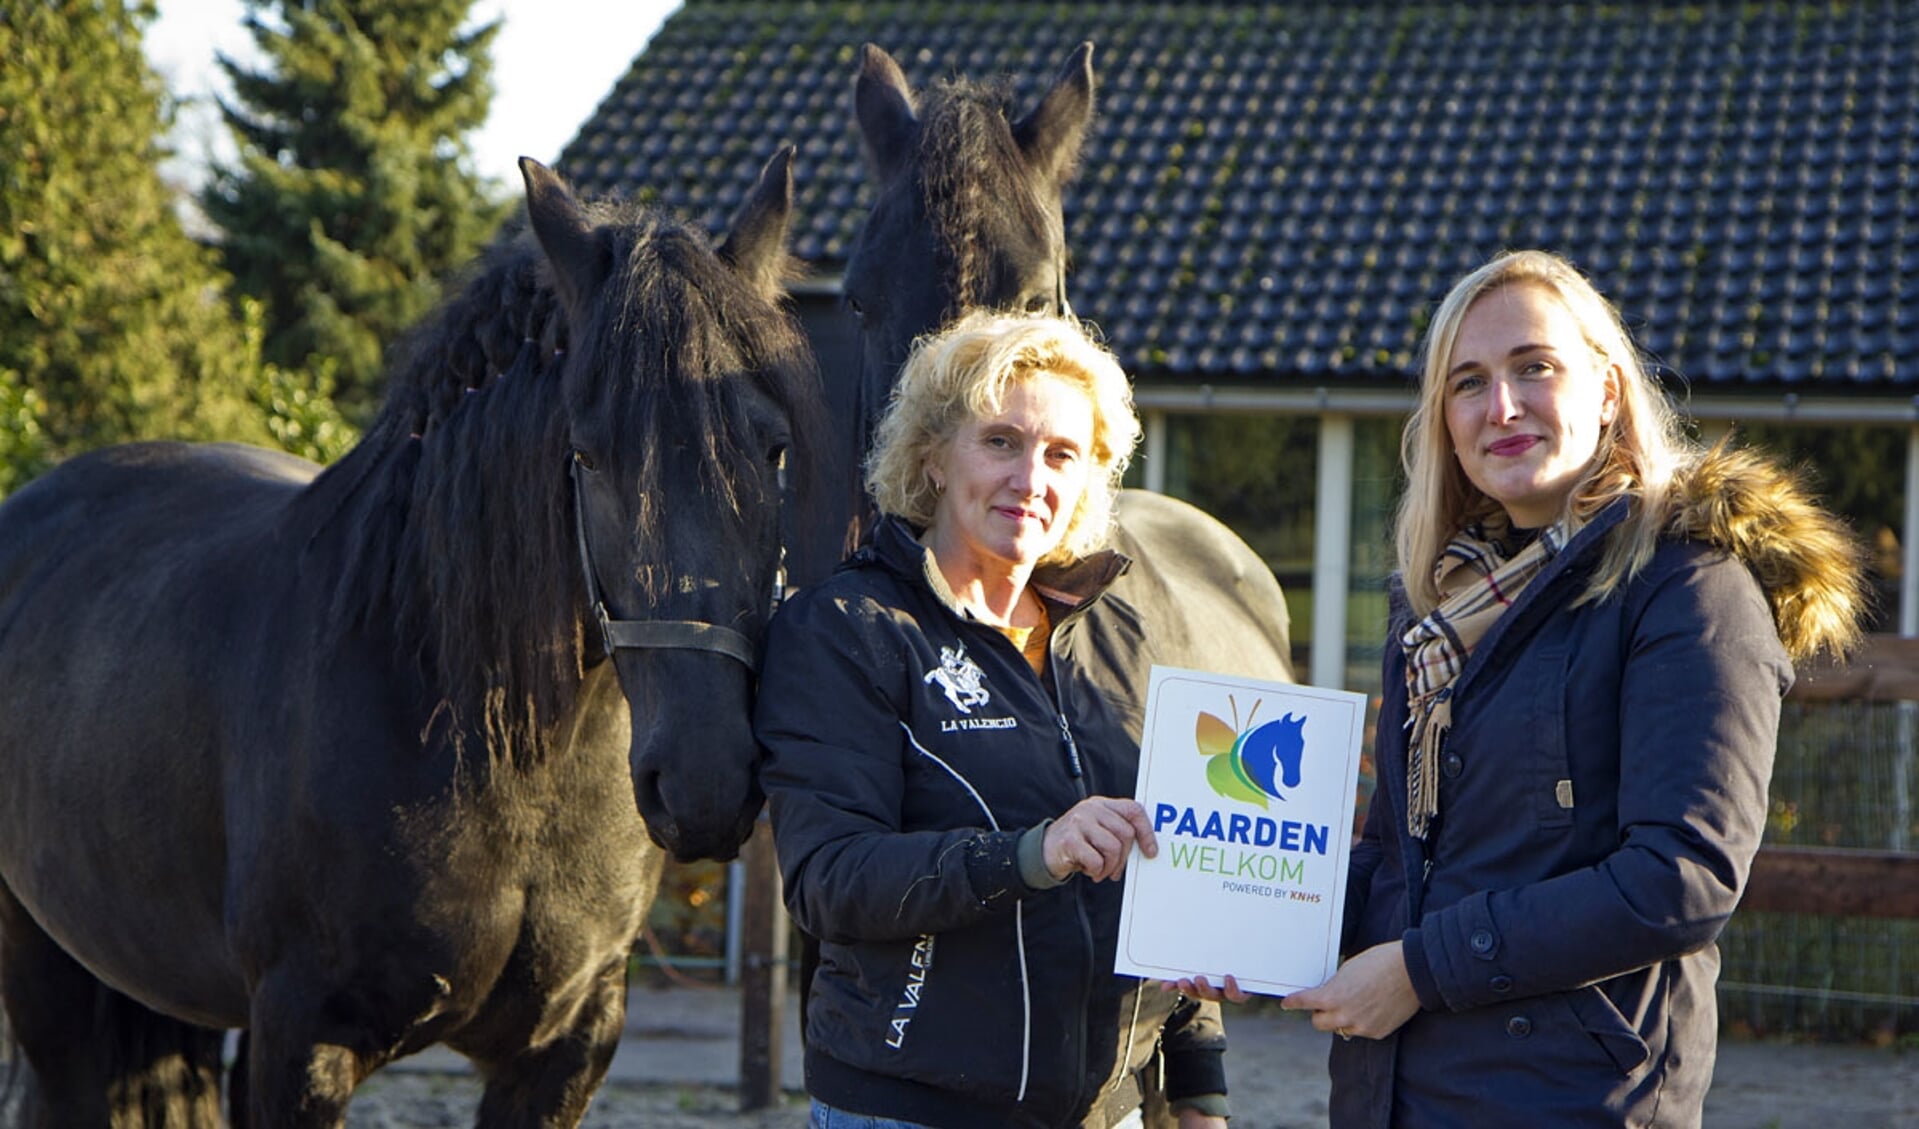 Wil van Wagensveld van De Oscarhoeve (links) ontvangt het Paarden Welkom bord van Eileen Bakker van de KNHS